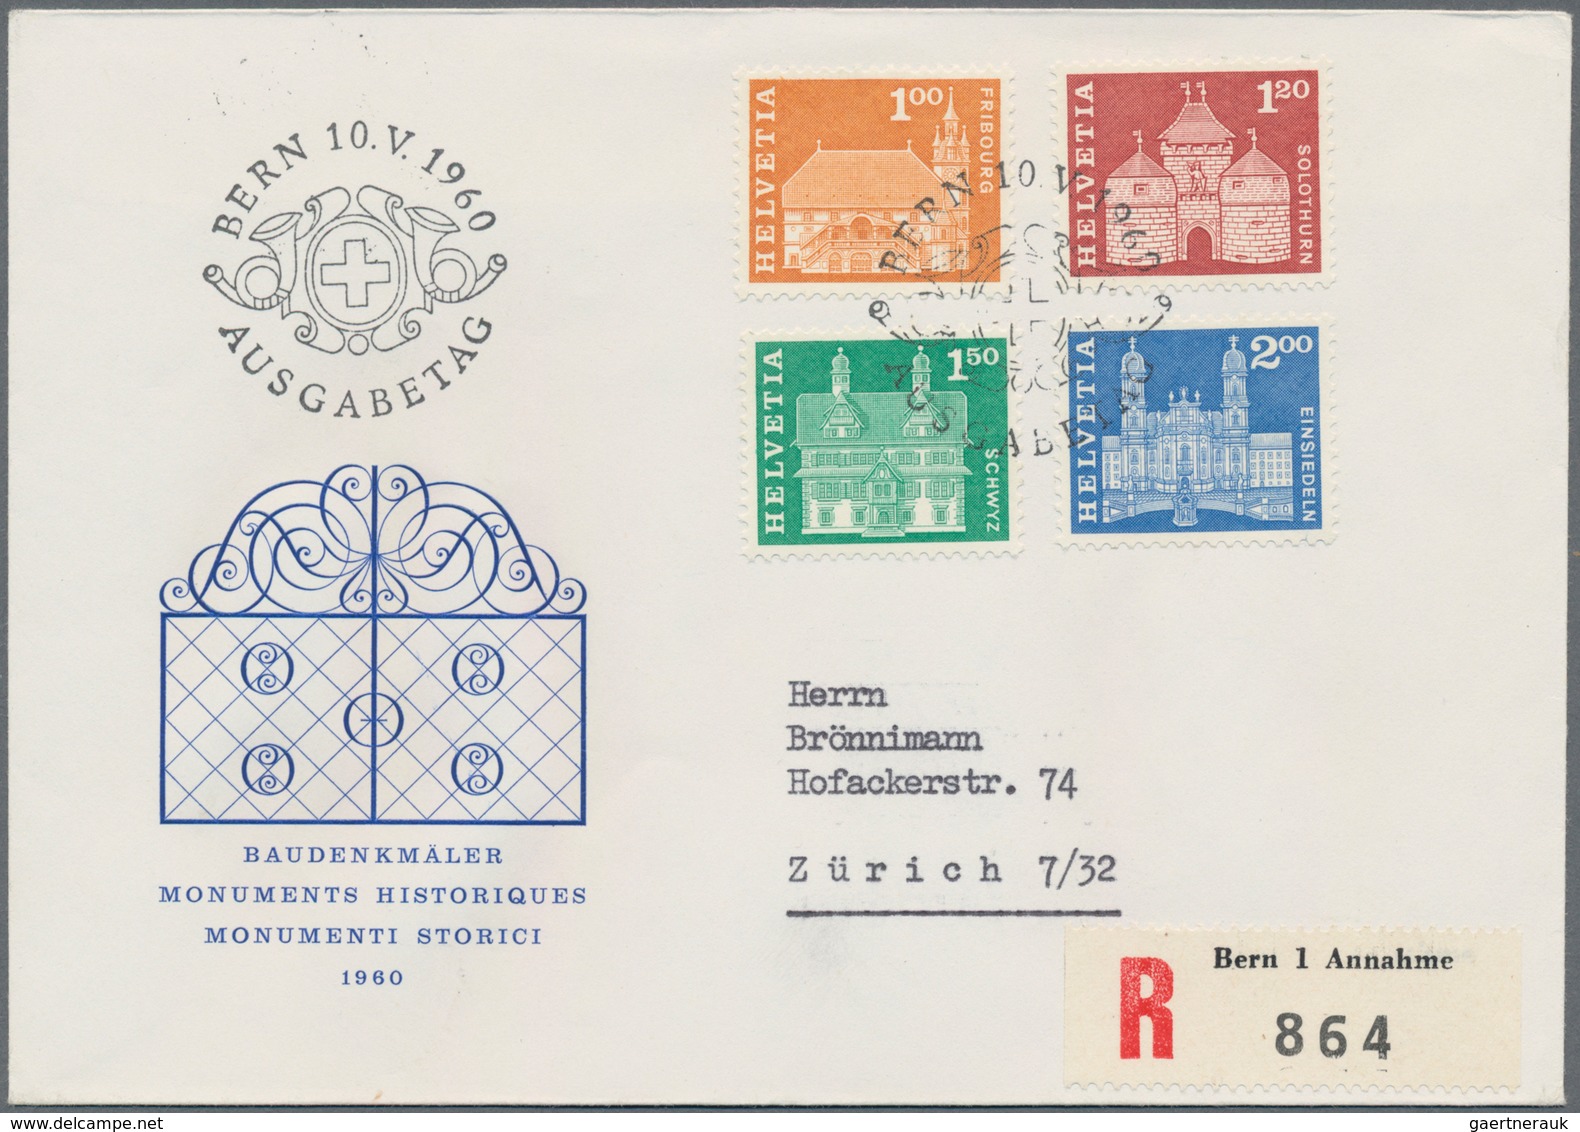 Schweiz: 1942-62: 17 FDCs Und Briefe, Dabei U.a. Pro Patria-Block '42 Auf R-Brief, Zwei Basel-Blocks - Sammlungen